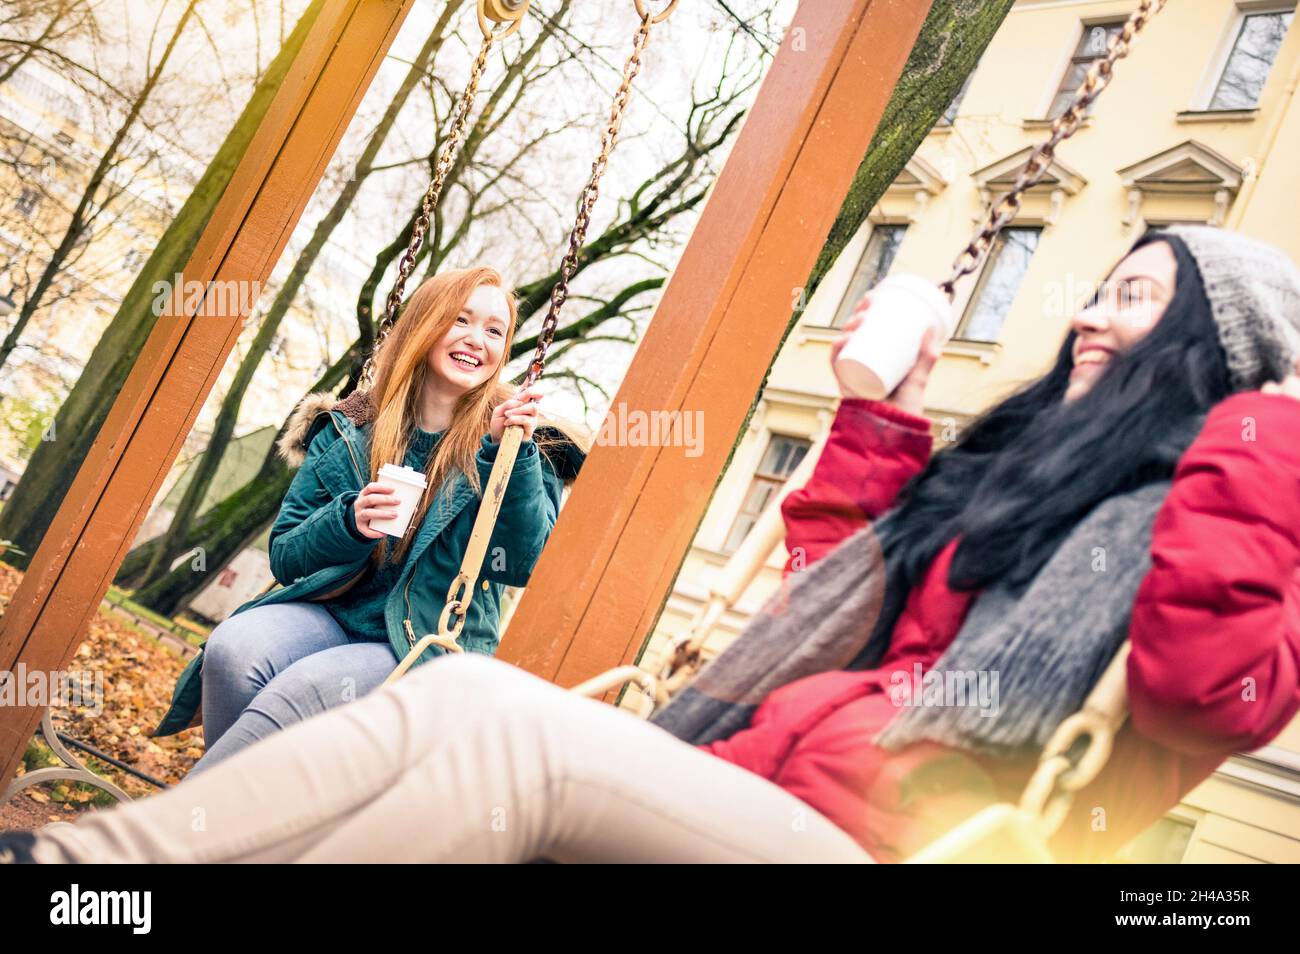 Glückliche Freundinnen mit Spaß auf Schaukel Spiel im Park in der Herbstsaison - Freundschaftskonzept mit fröhlichen Mädchen teilen Winterzeit zusammen Stockfoto